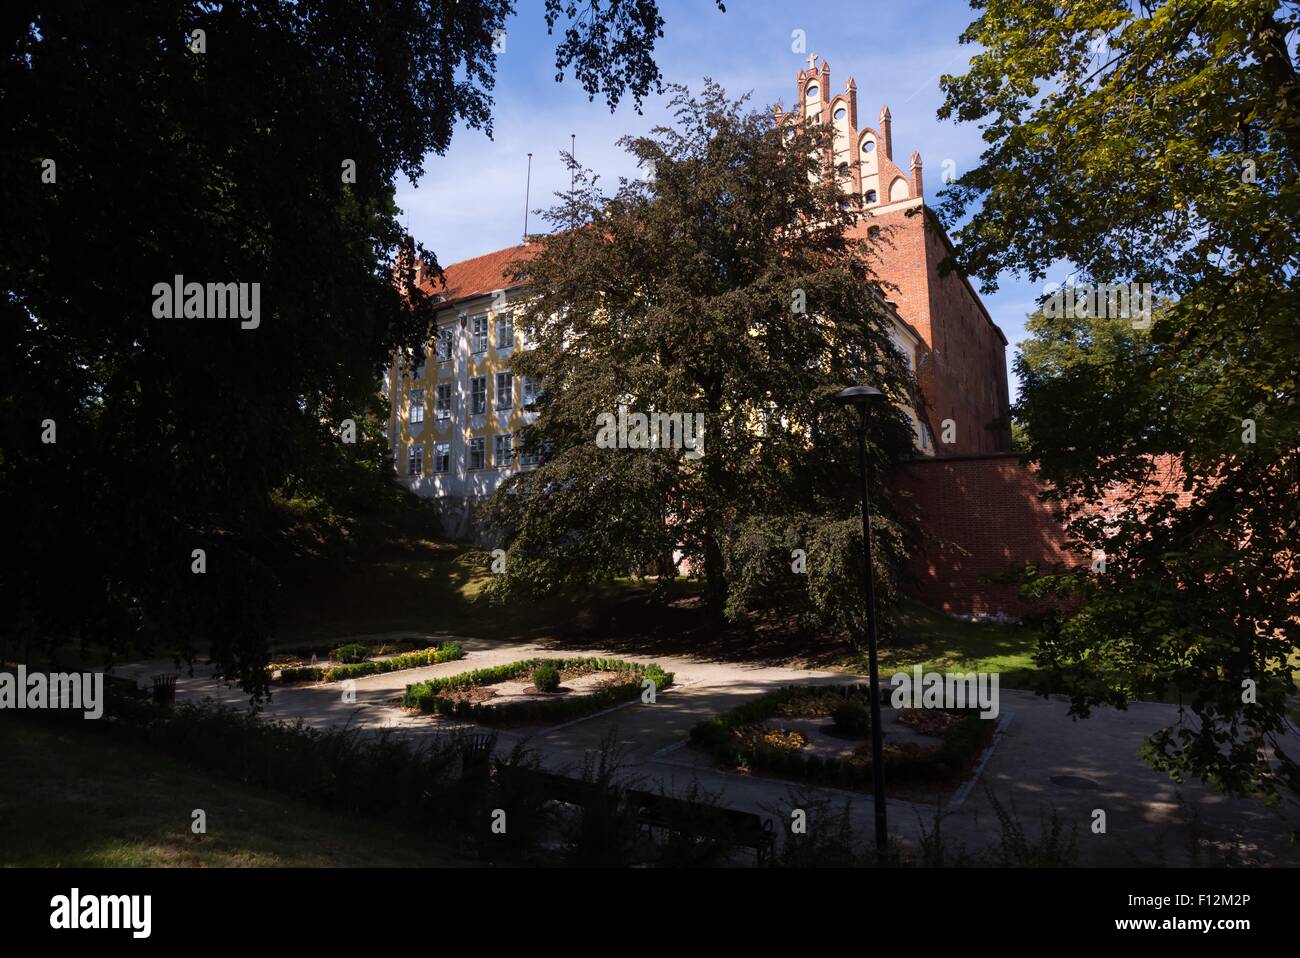 OLSZTYN, Polen - 21. August 2015: Alte Kreuzritterburg in Olsztyn (gotische Kreuzritter Schloss), touristische Attraktion des östlichen Polan Stockfoto